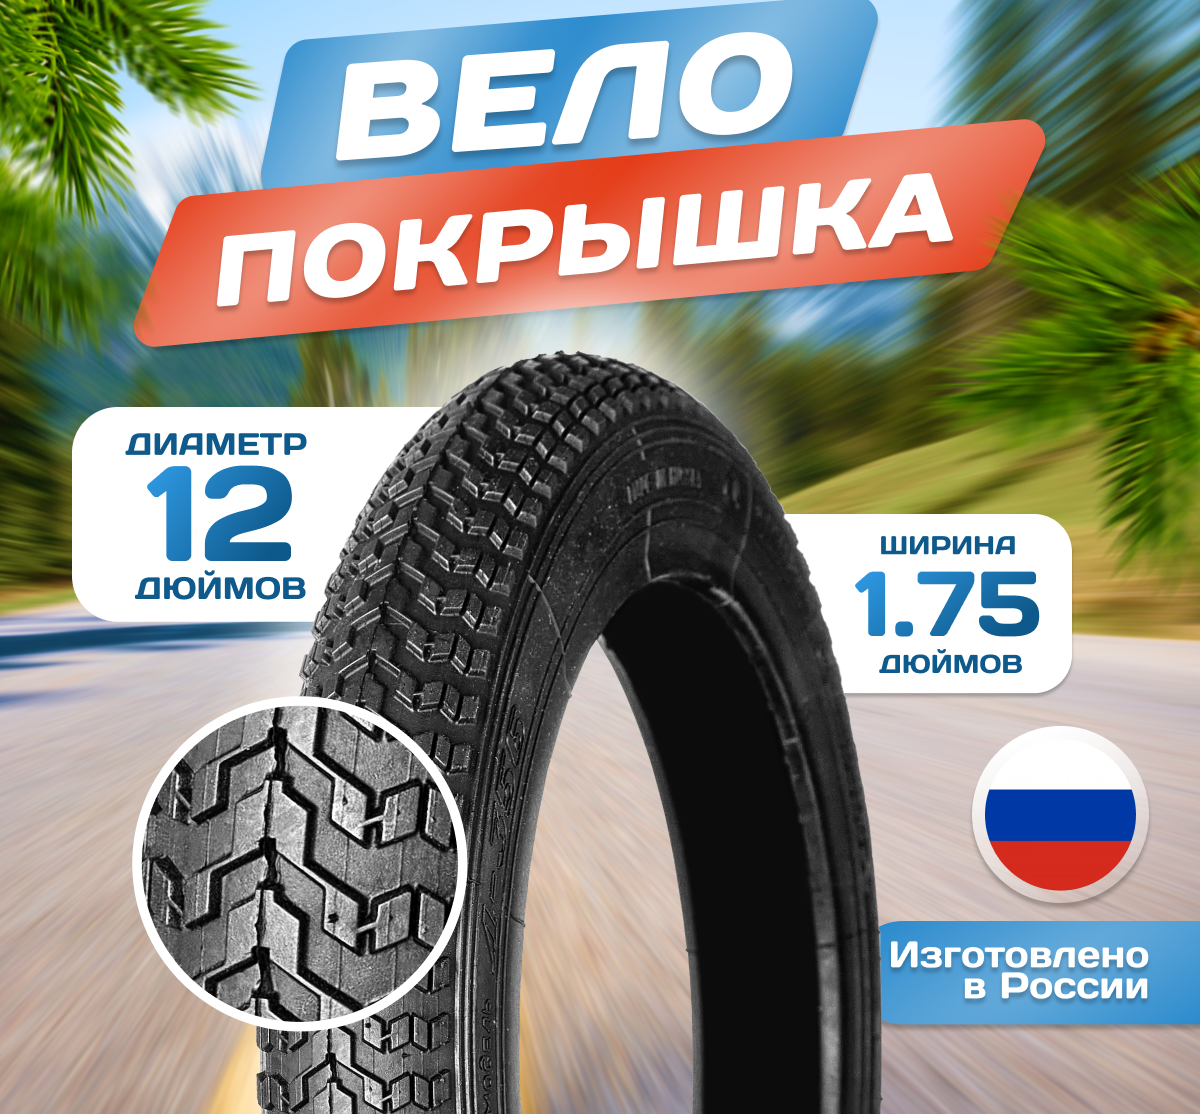 Покрышка для коляски и велосипеда 12 x 1.75 (47-203) Л-356, Российского производства